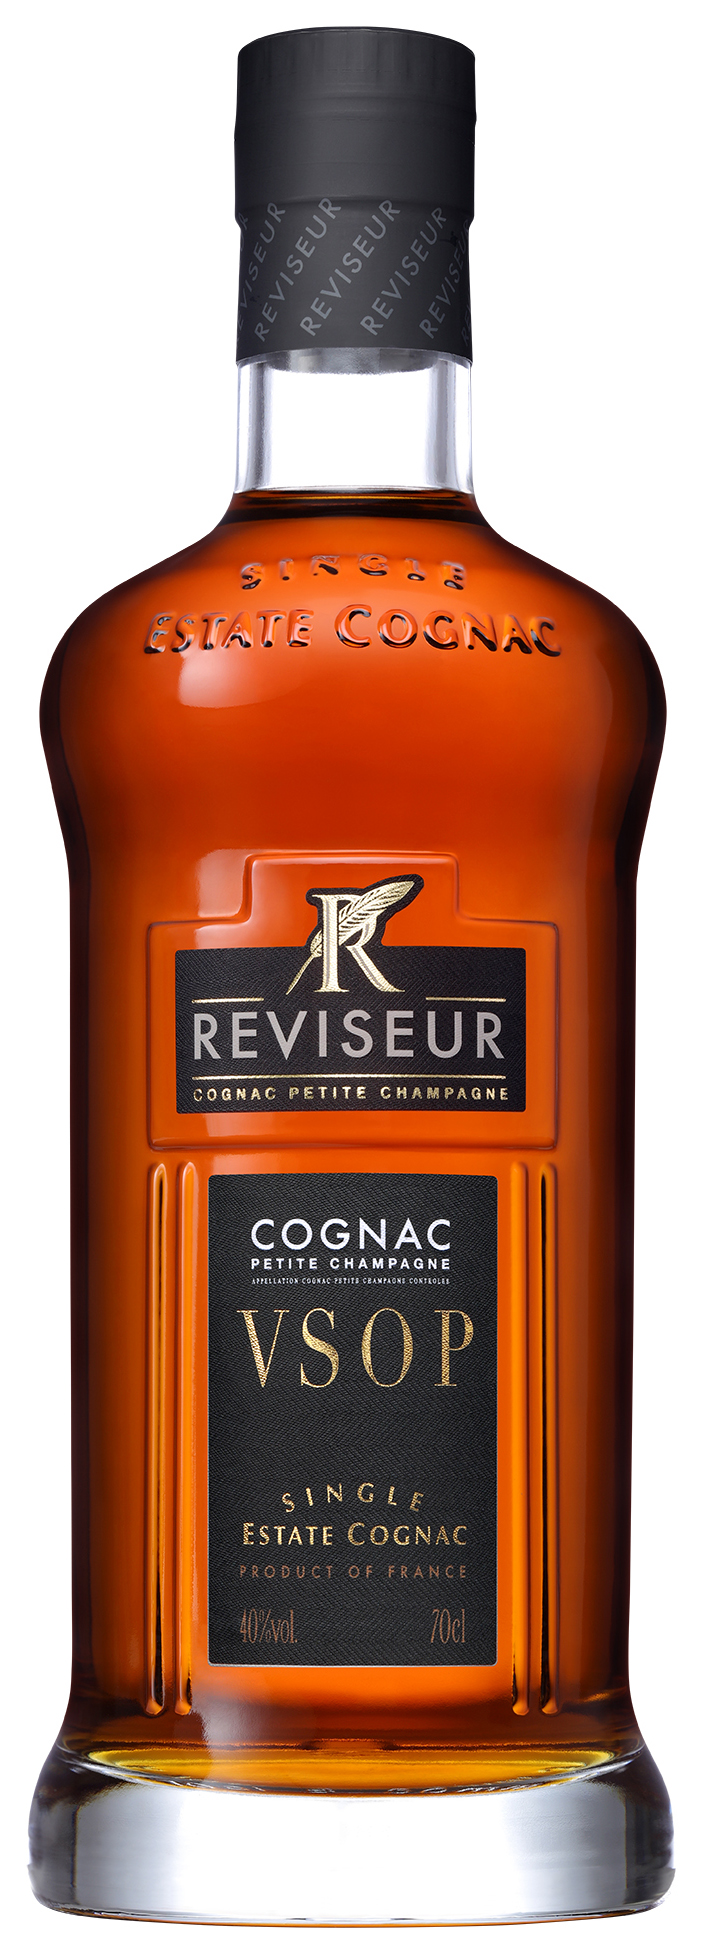 Reviseur VSOP Cognac 